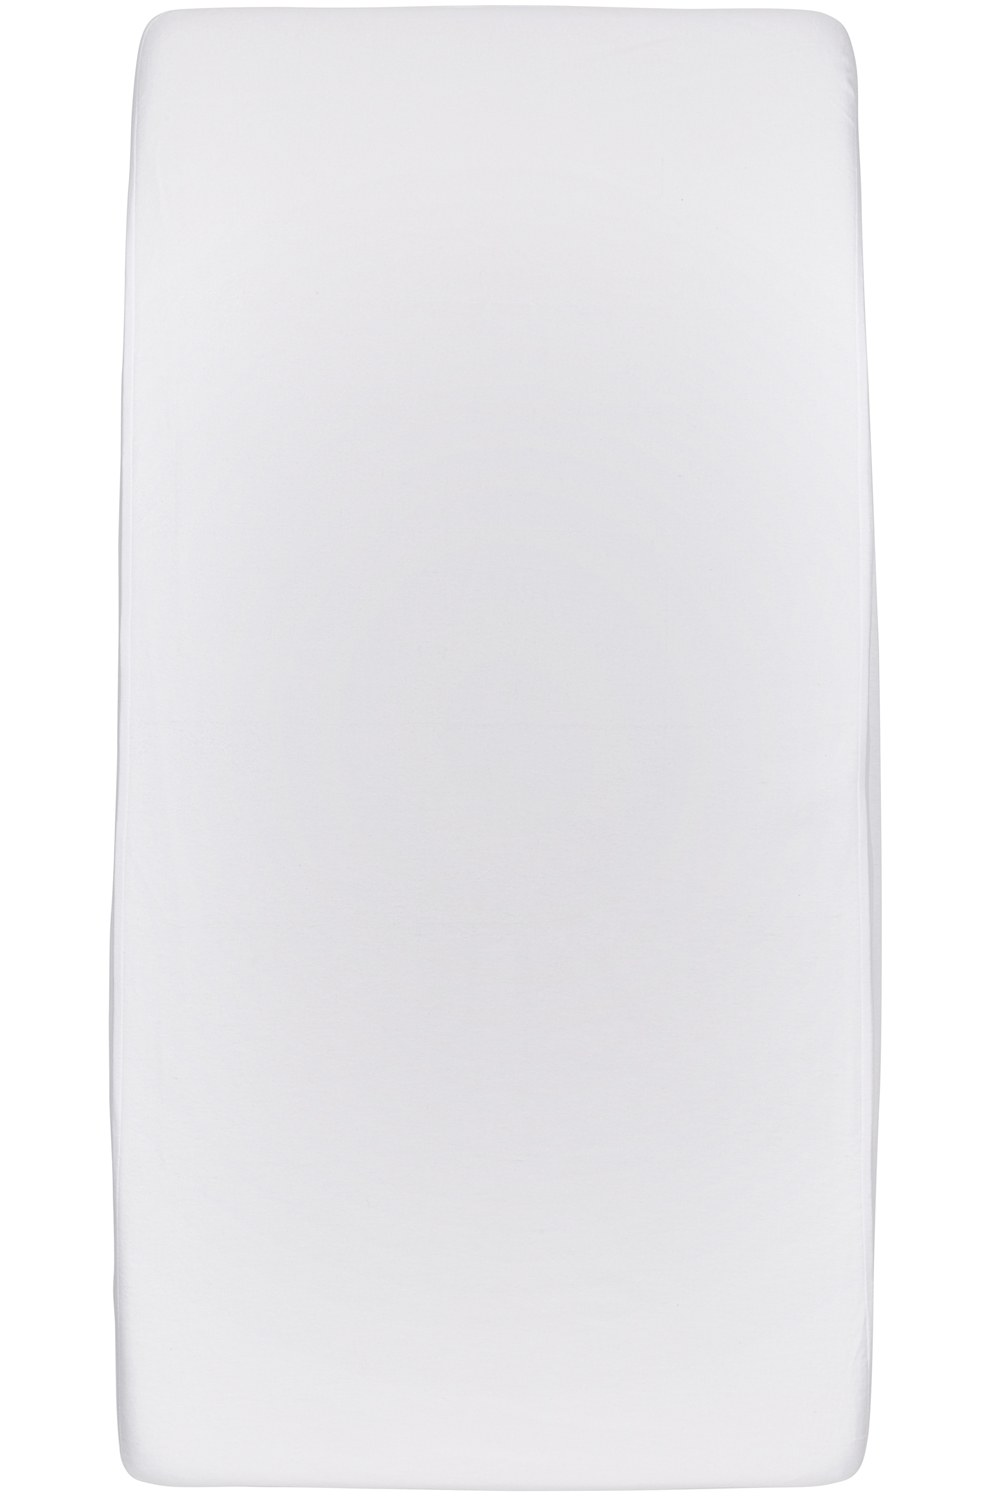 Waterdicht hoeslaken juniorbed - white - 70x140/150cm